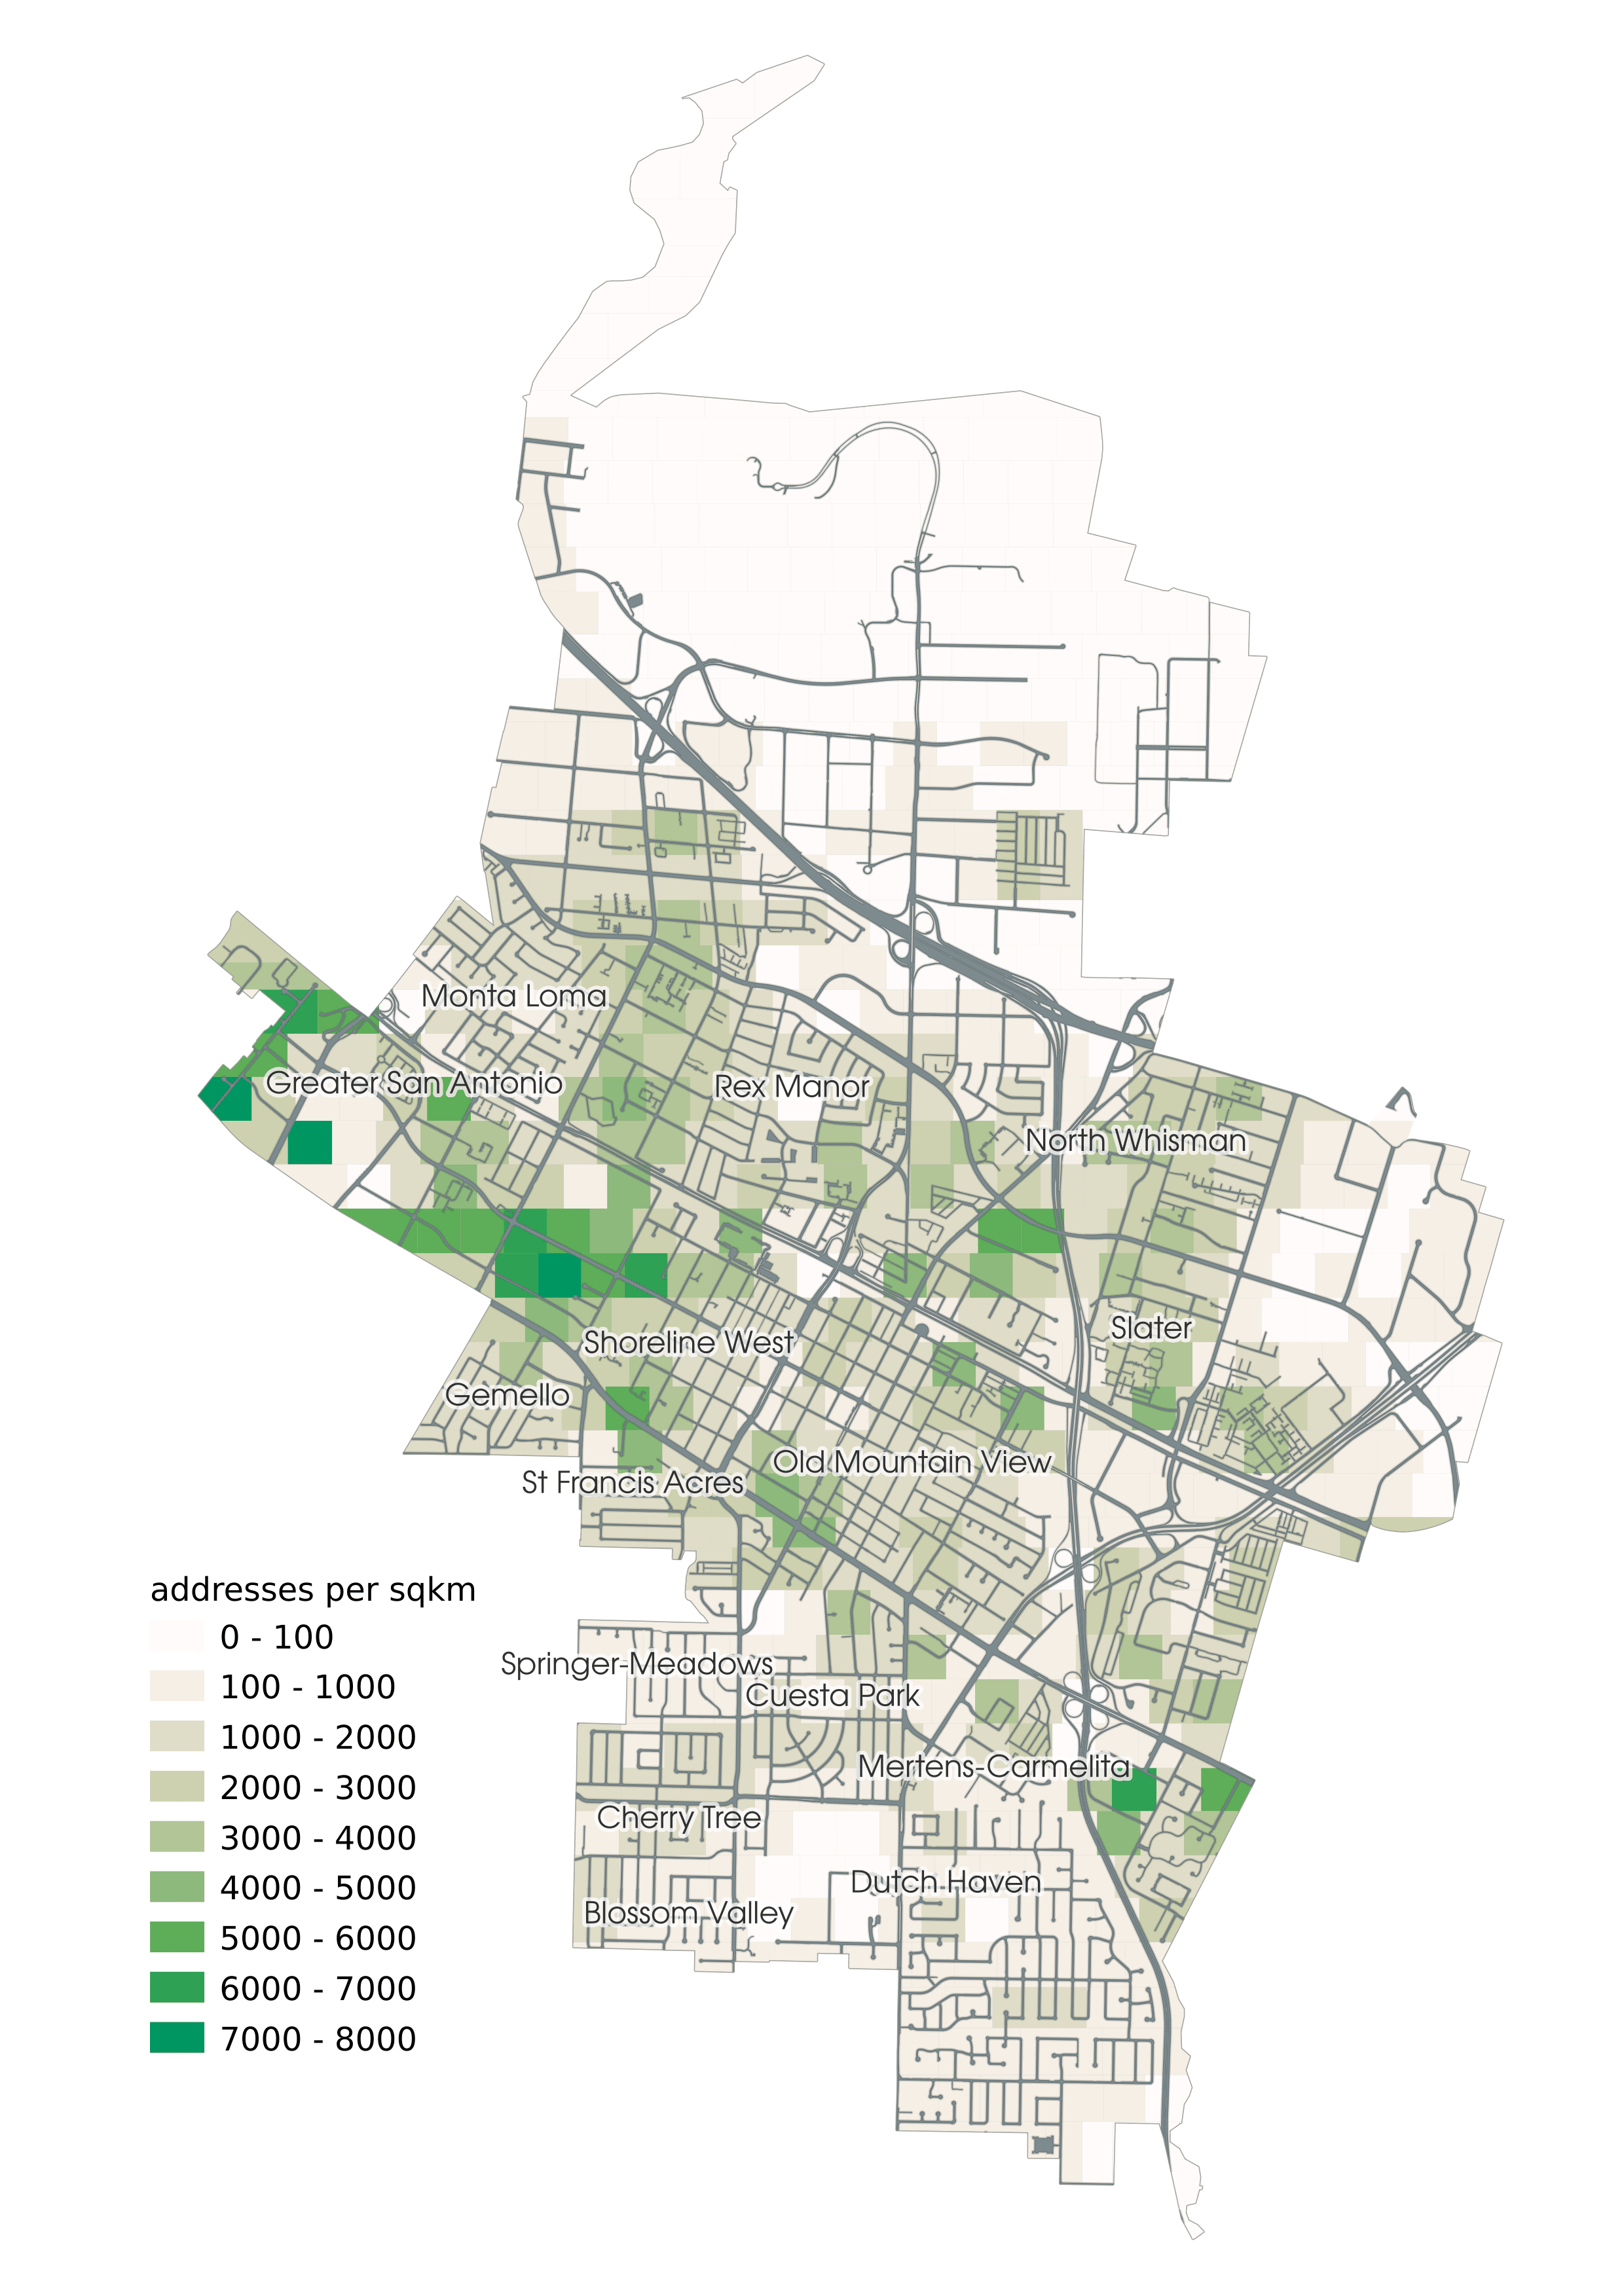 address density